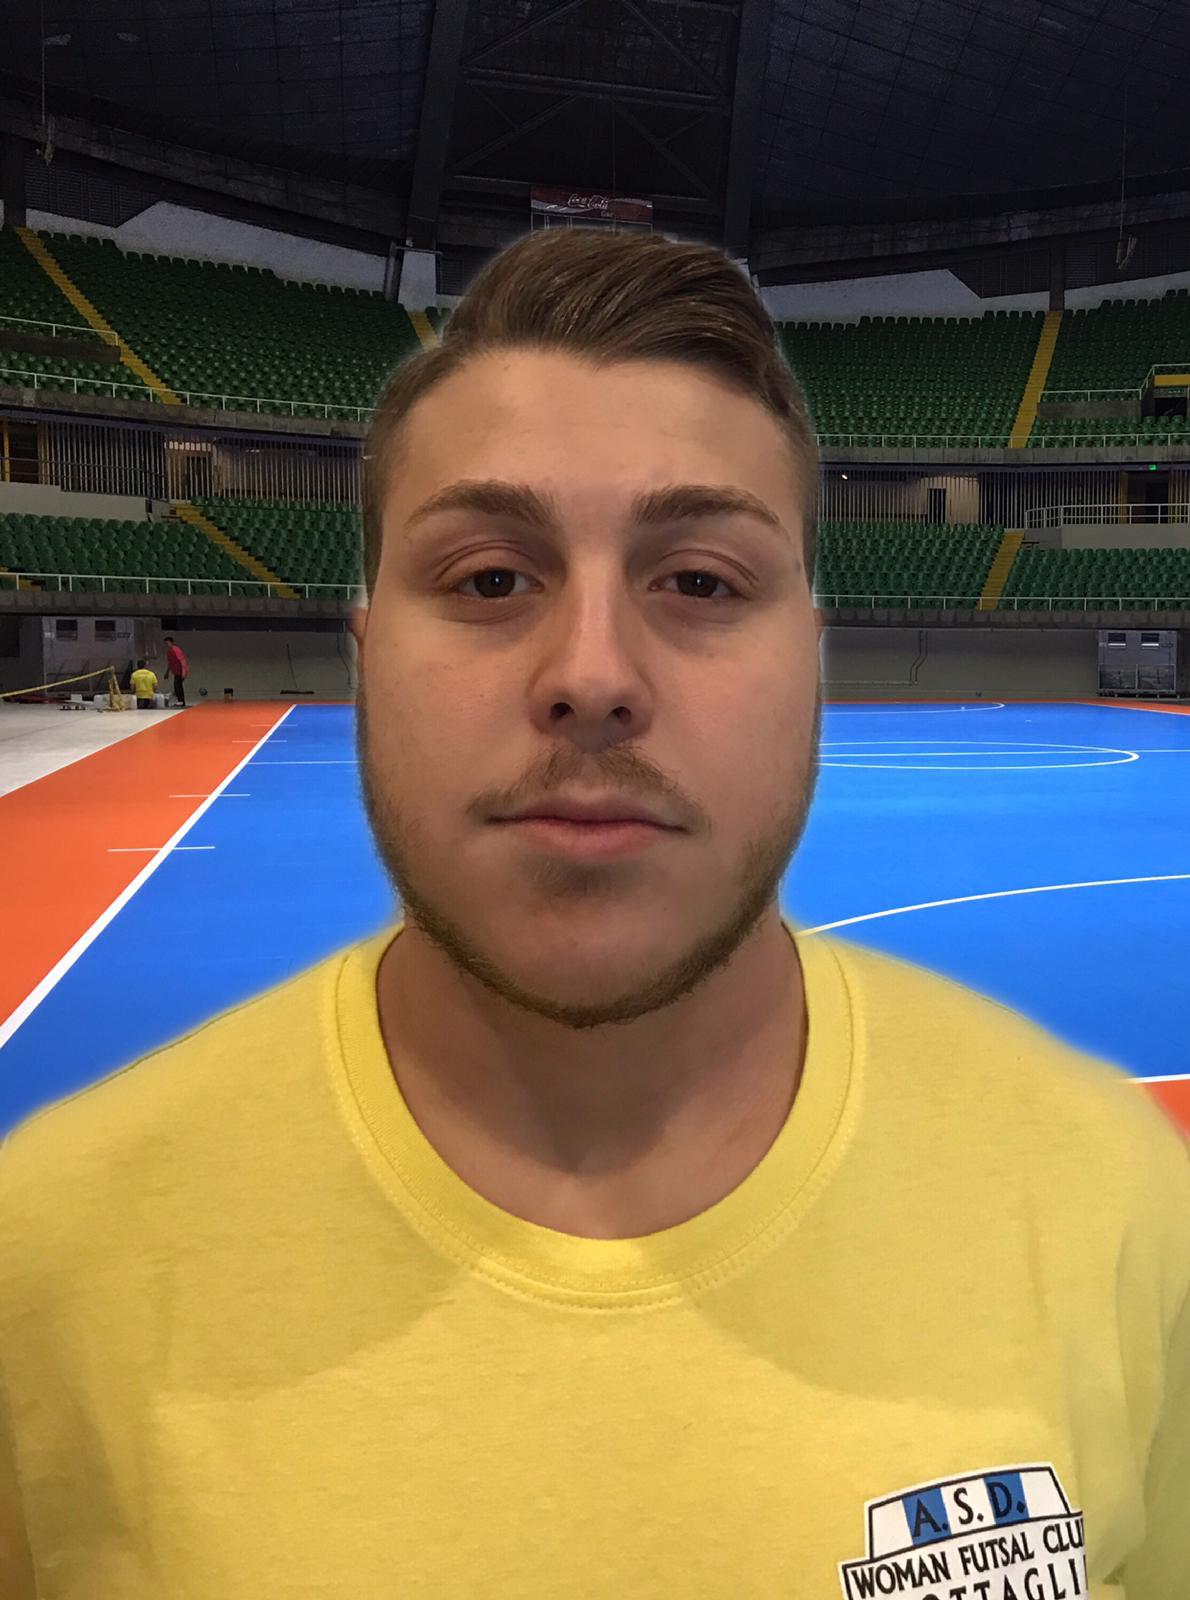 Woman Futsal Club Grottaglie. E’ Ciro Quaranta,  il fisioterapista ufficiale